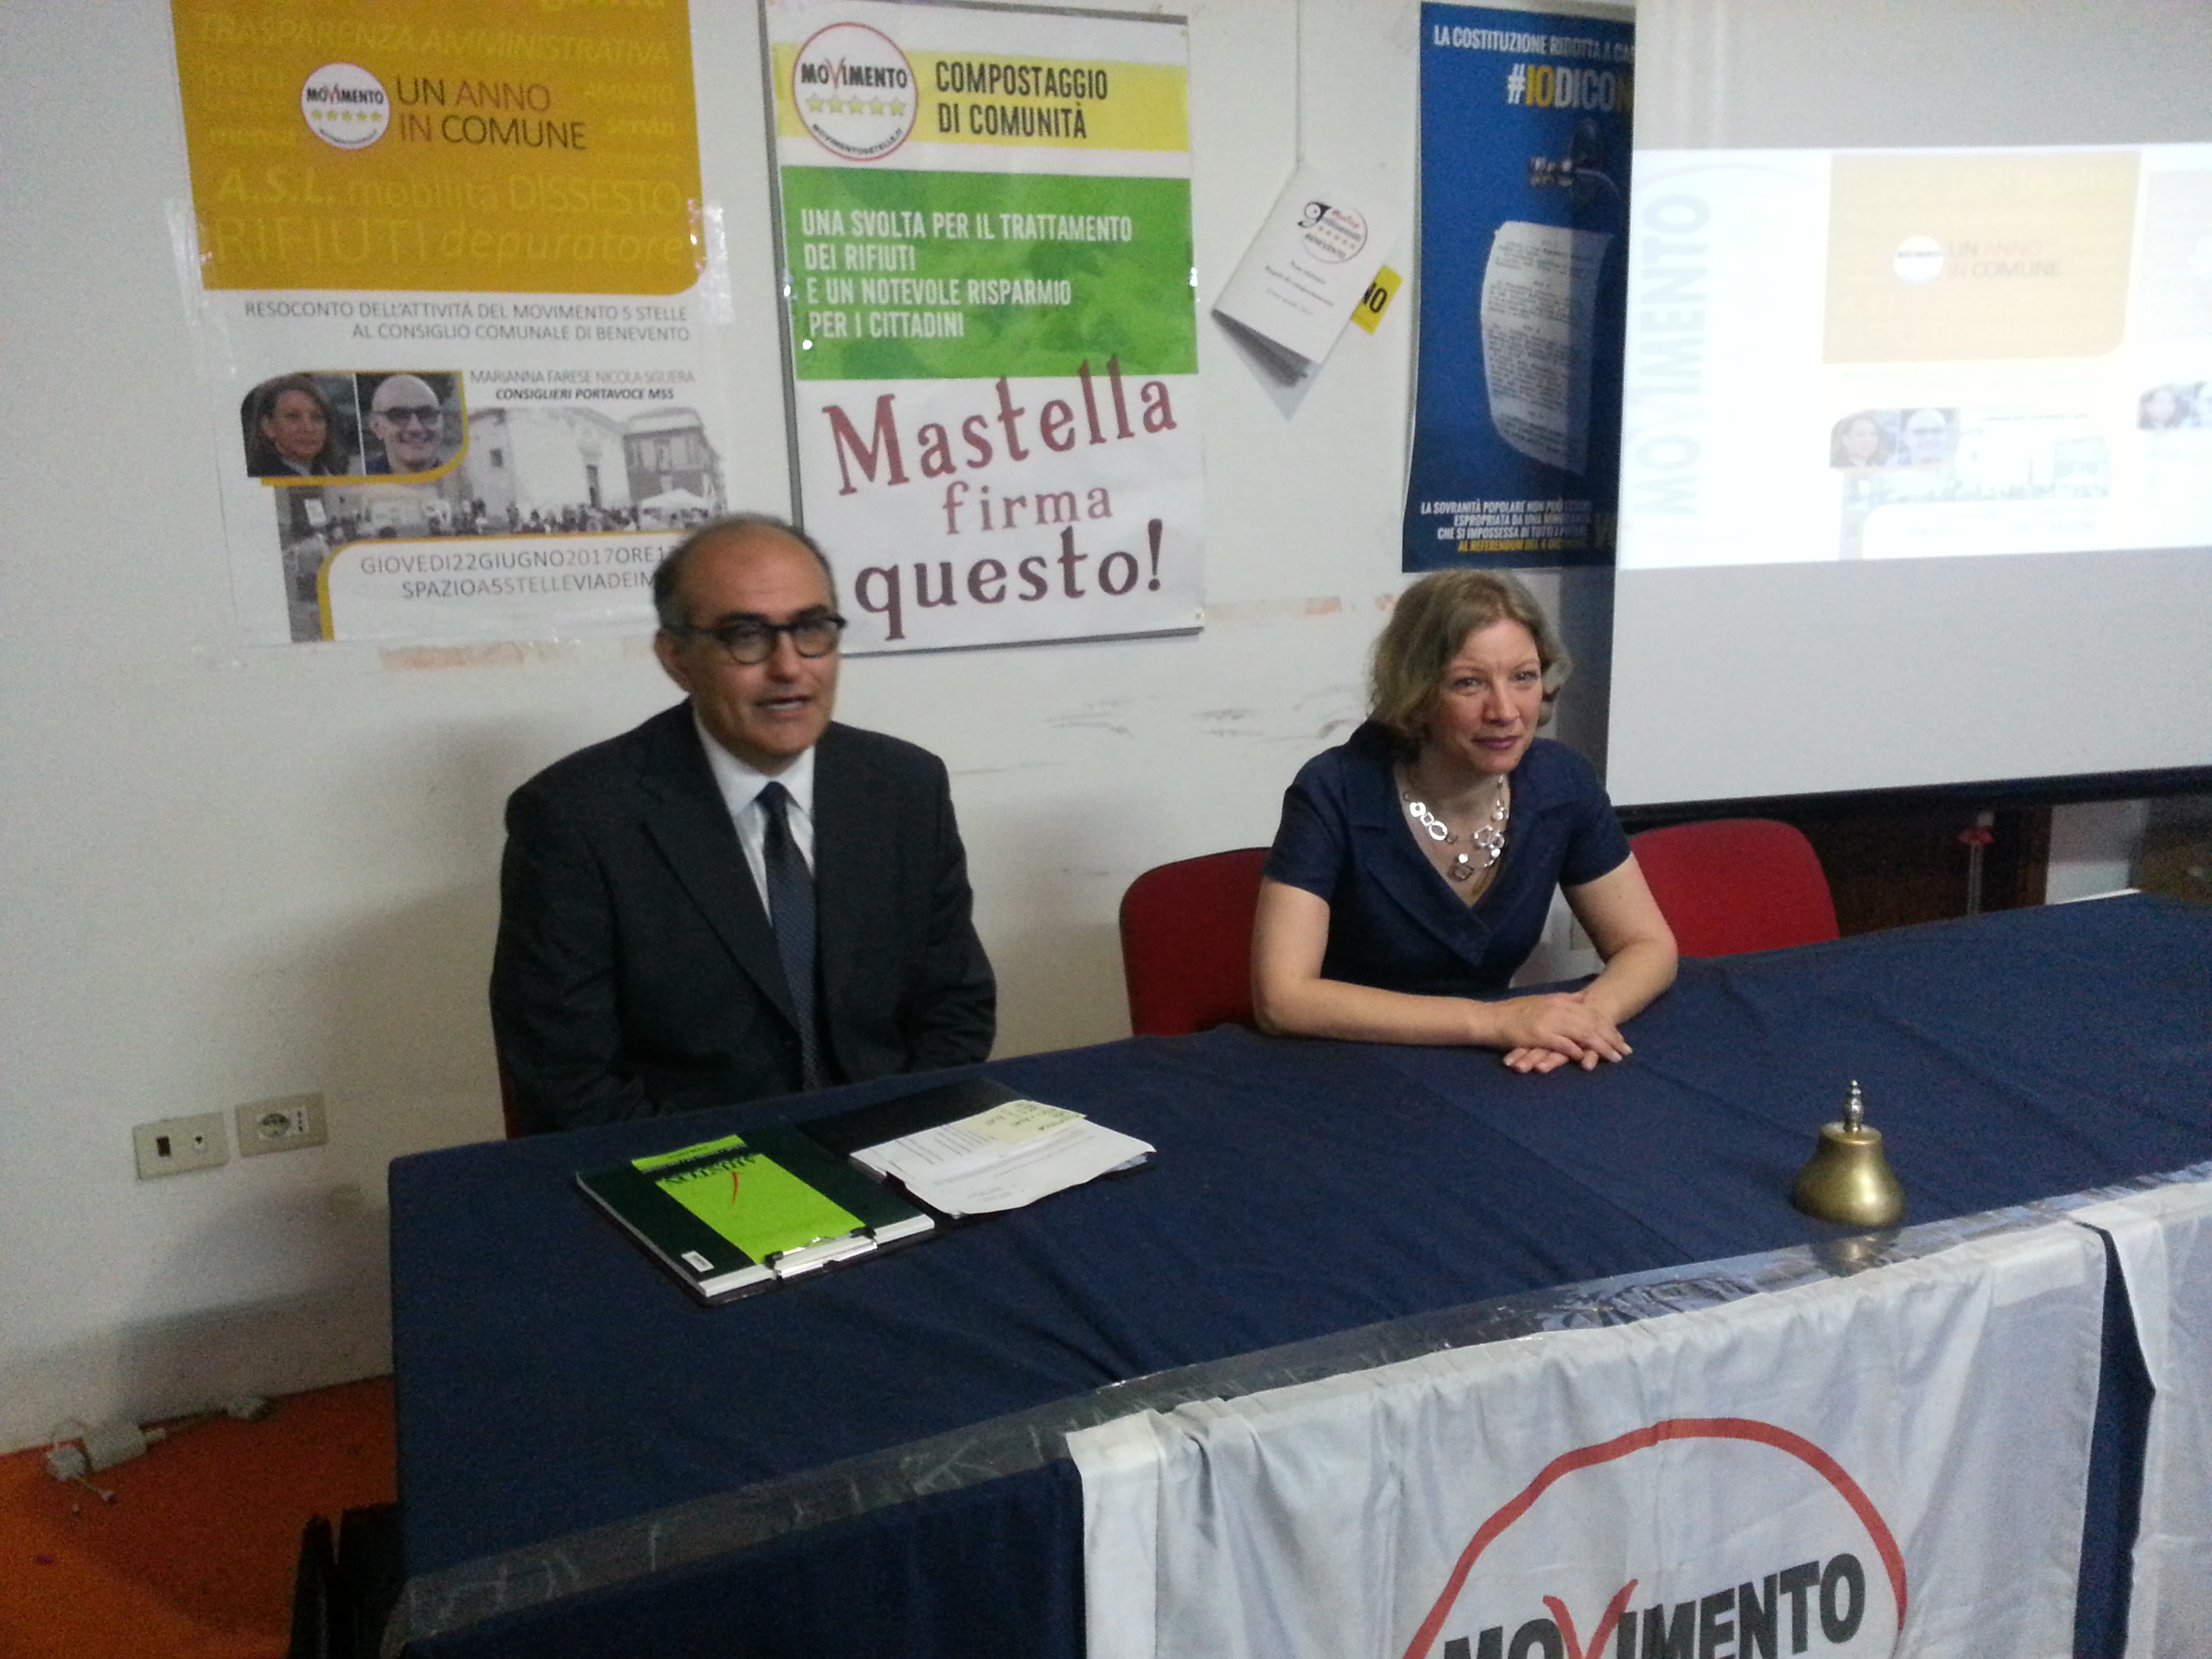 Benevento| 5Stelle, un anno di lavoro contro il dirigismo mastelliano